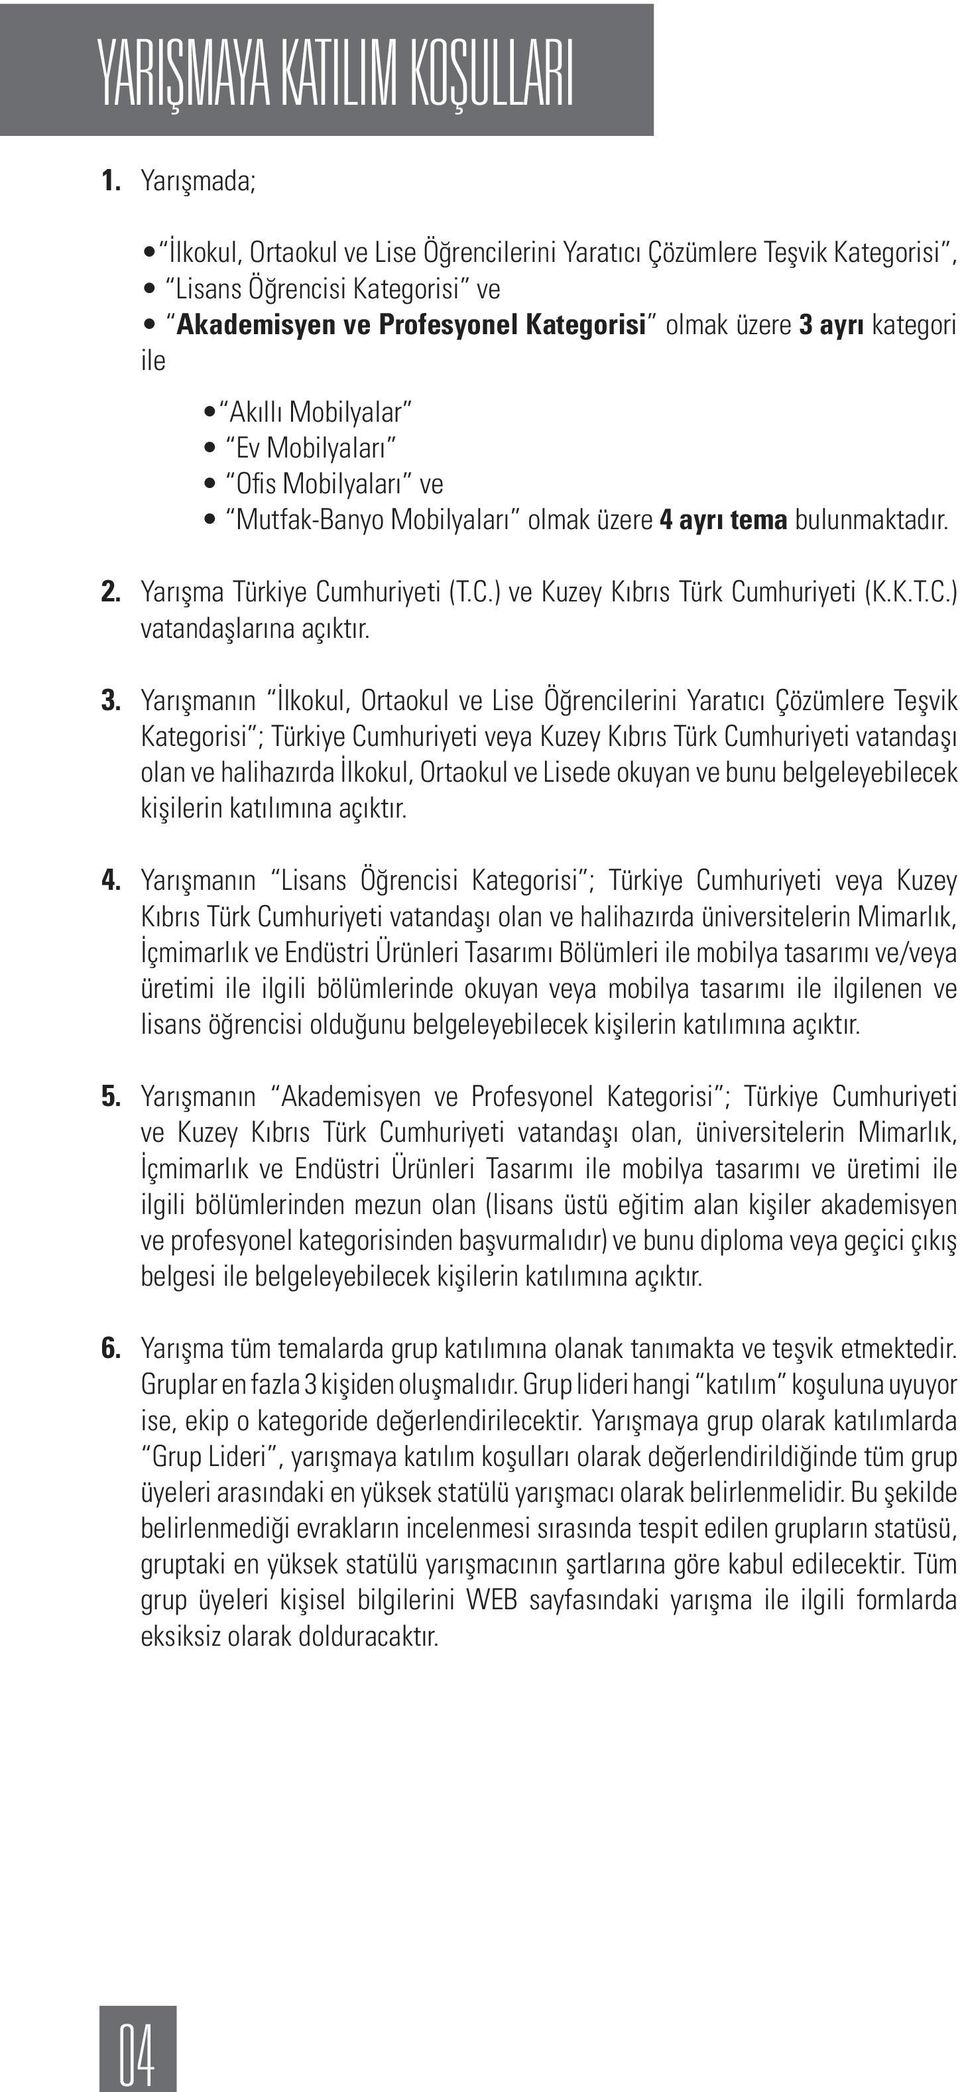 Mobilyalar Ev Mobilyaları Ofis Mobilyaları ve Mutfak-Banyo Mobilyaları olmak üzere 4 ayrı tema bulunmaktadır. 2. Yarışma Türkiye Cumhuriyeti (T.C.) ve Kuzey Kıbrıs Türk Cumhuriyeti (K.K.T.C.) vatandaşlarına açıktır.